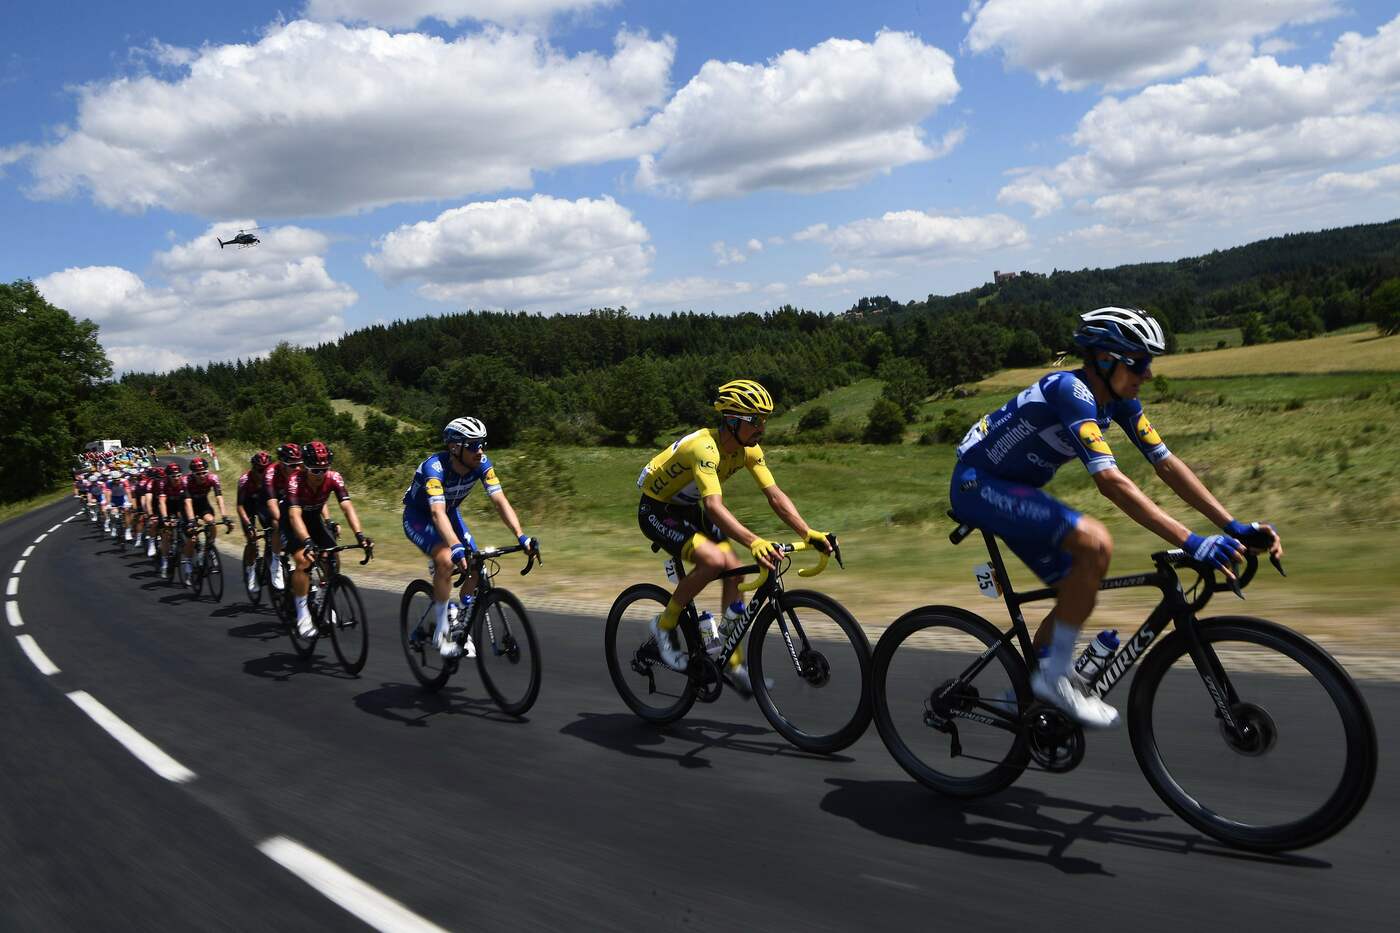 Tour de France 2019 favoriti tappa 17: Point du Gard-Gap, l'analisi e i consigli del B-Lab sulla tappa di oggi al Tour de France 2019!